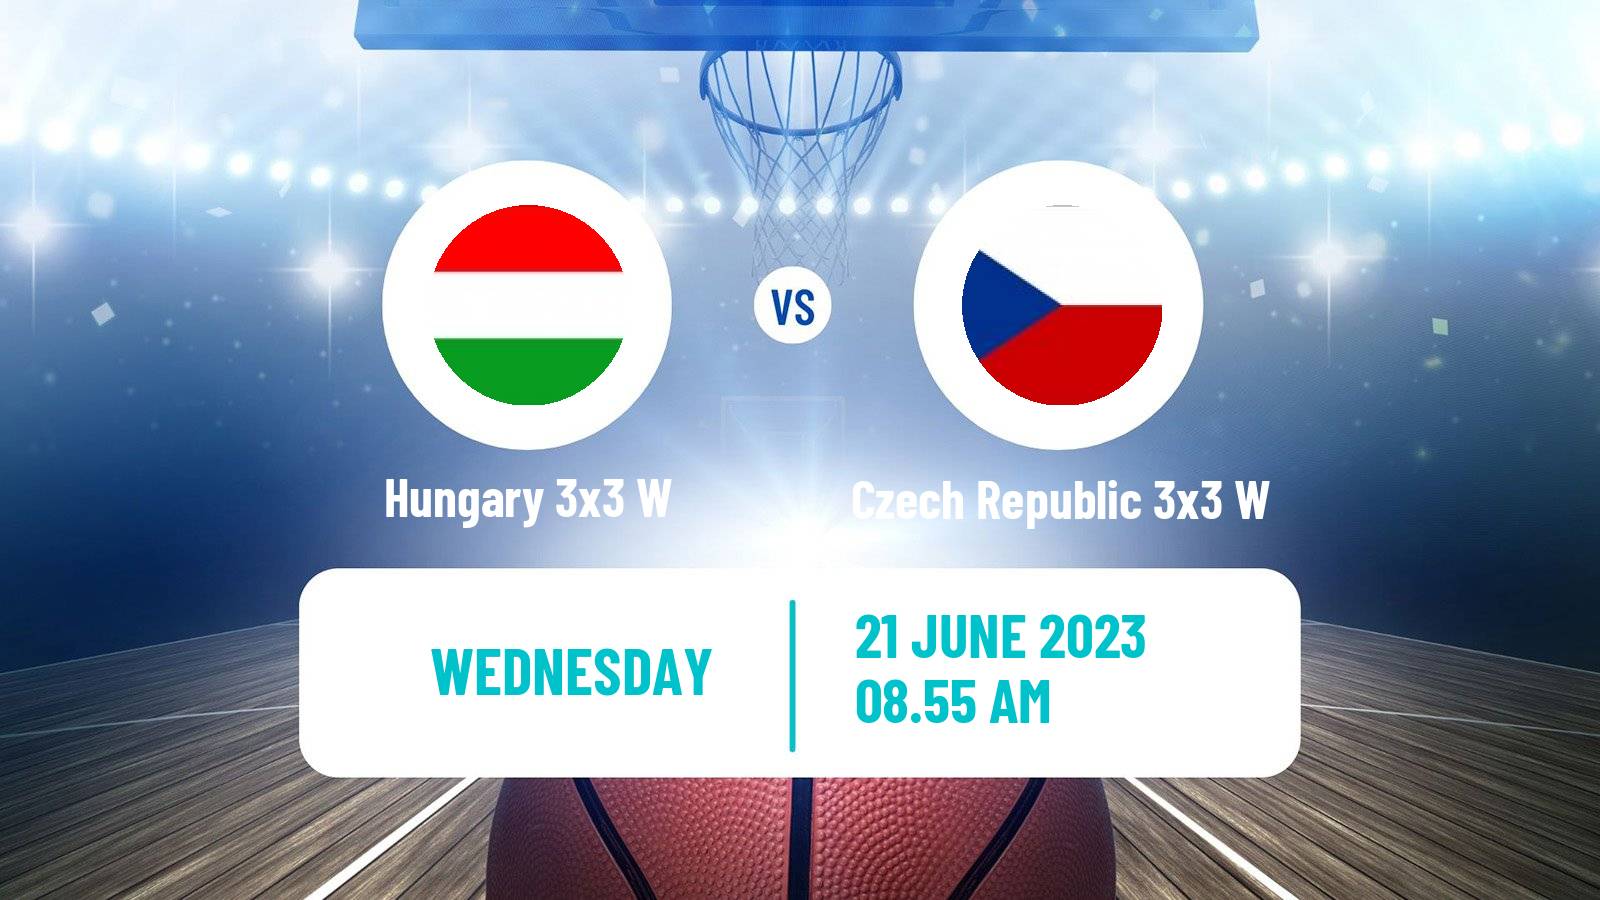 Basketball European Games 3x3 Women Hungary 3x3 W - Czech Republic 3x3 W